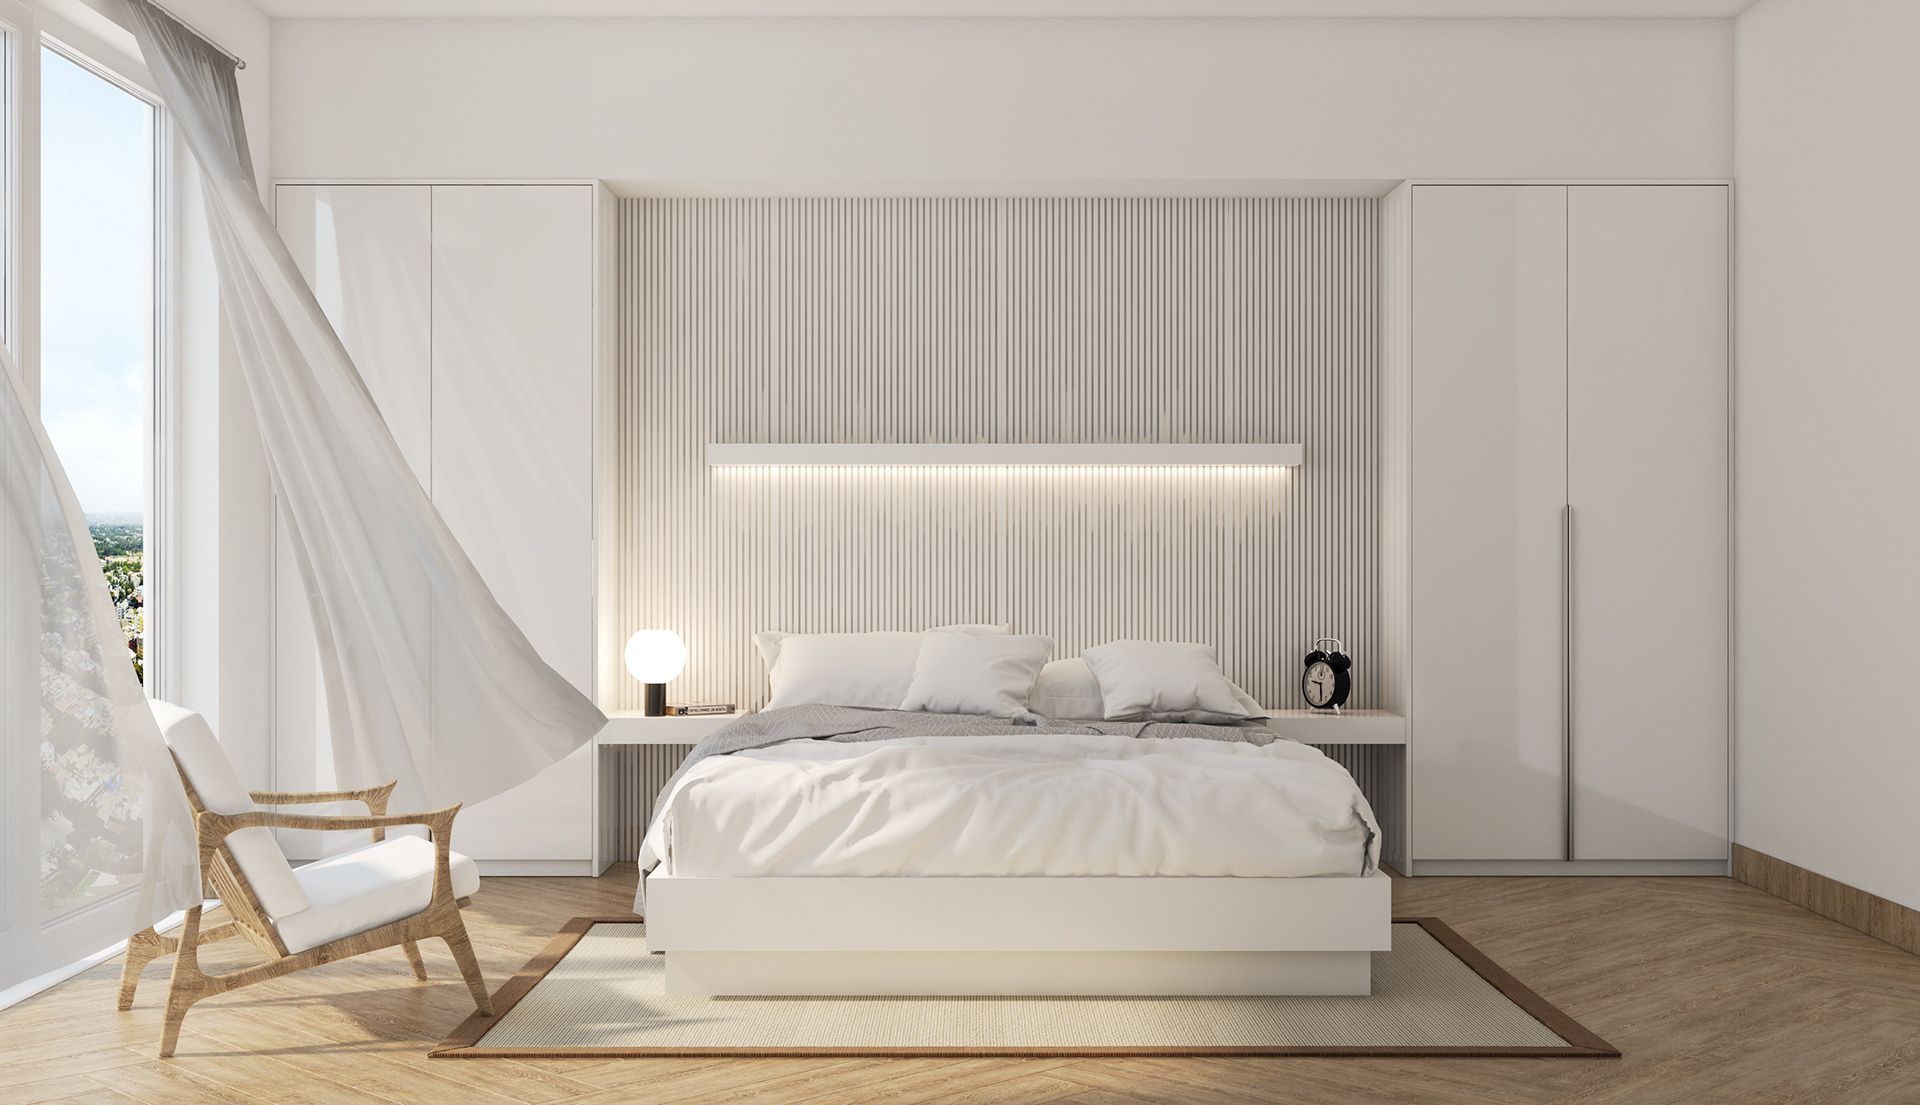 Phong cách minimalism cho phòng ngủ trắng là một sự kết hợp hoàn hảo